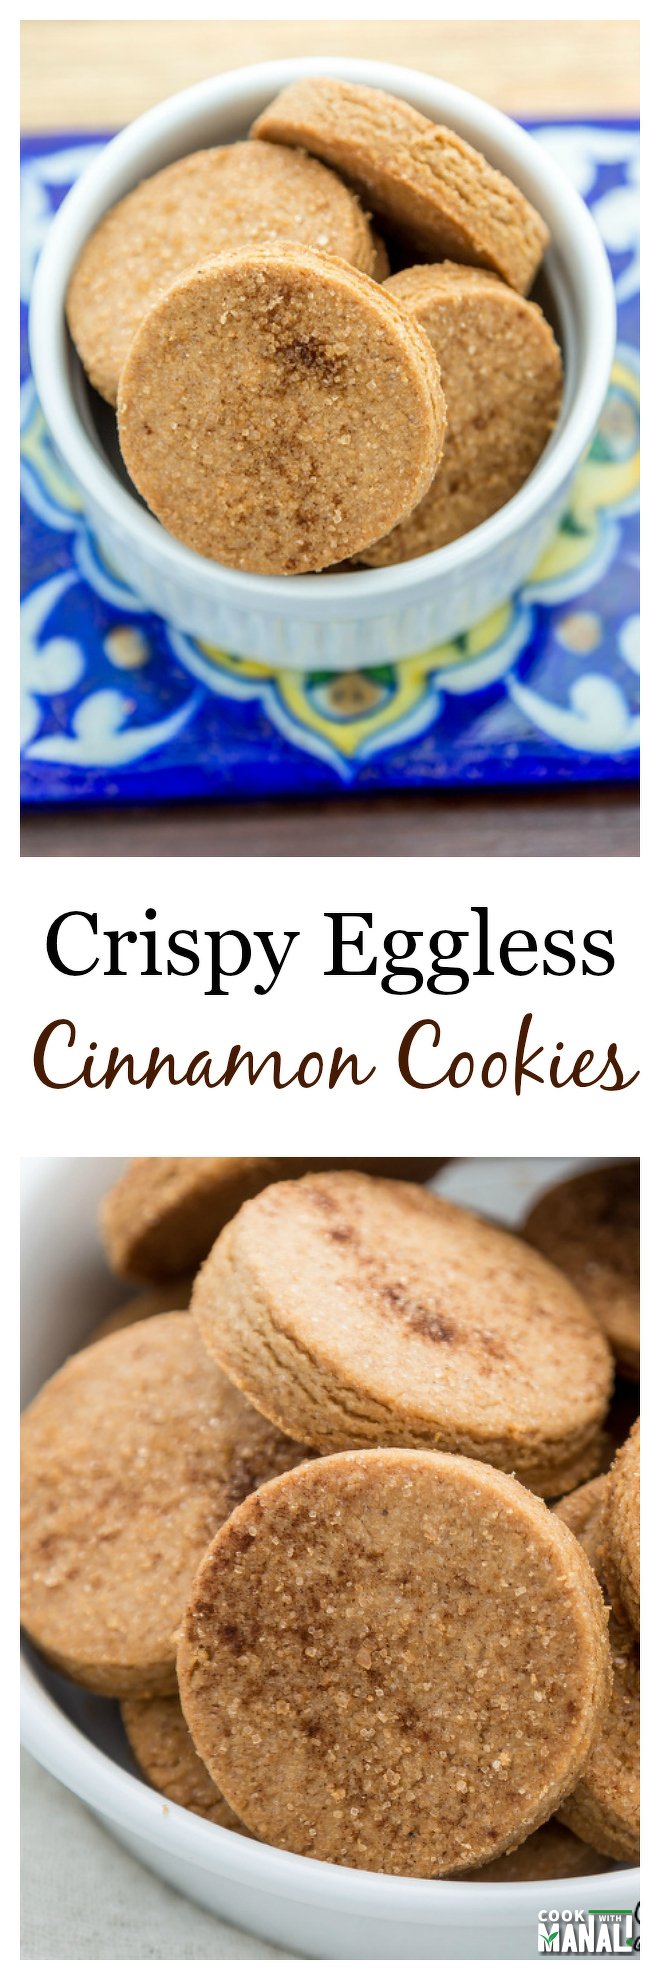 Crispy-Cinnamon-Cookies-Collage